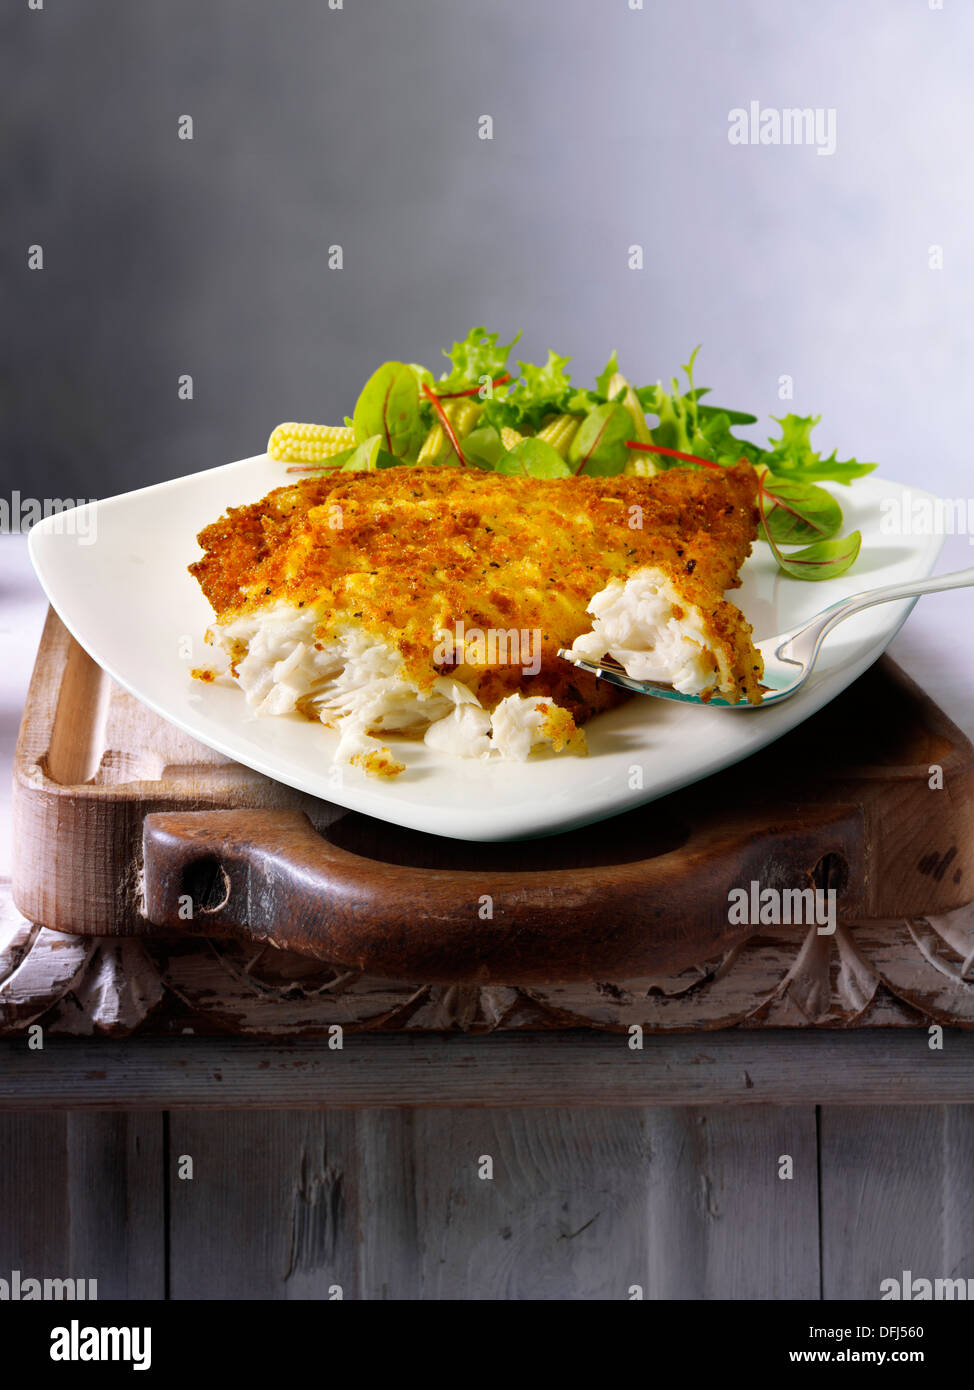 Leicht ramponierte Scholle & Salat essen serviert auf einem Teller auf einem Tisch Stockfoto